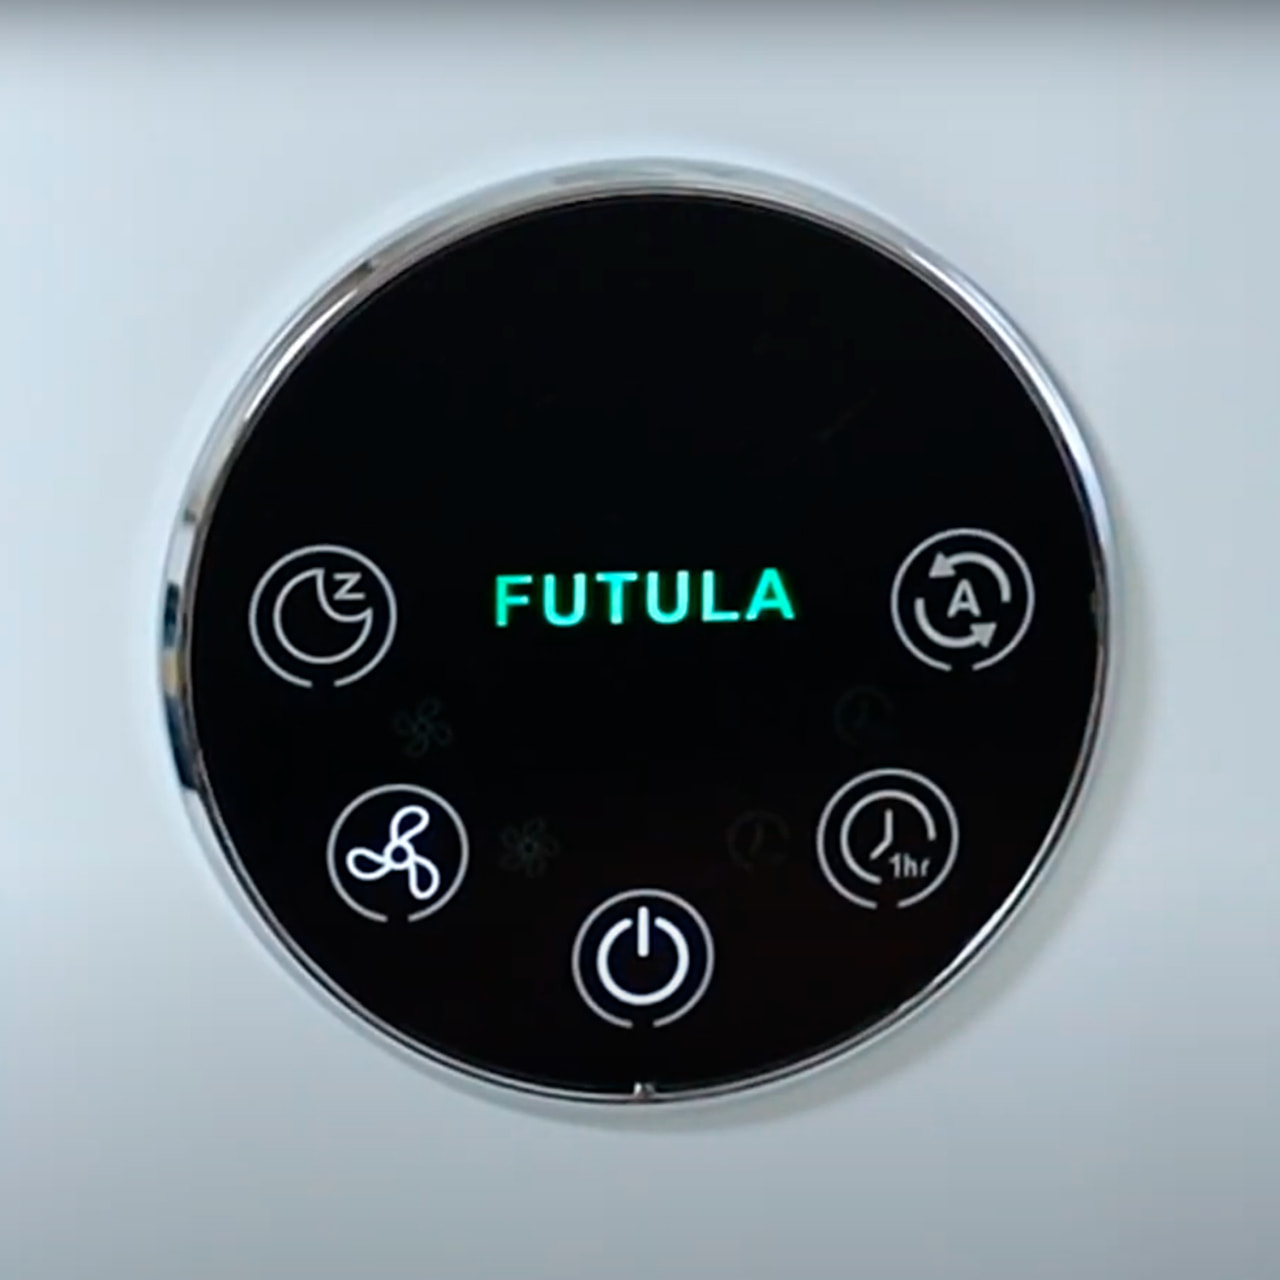 По центру панели выводится логотип Futula, цвет которого зависит от качества воздуха в помещении